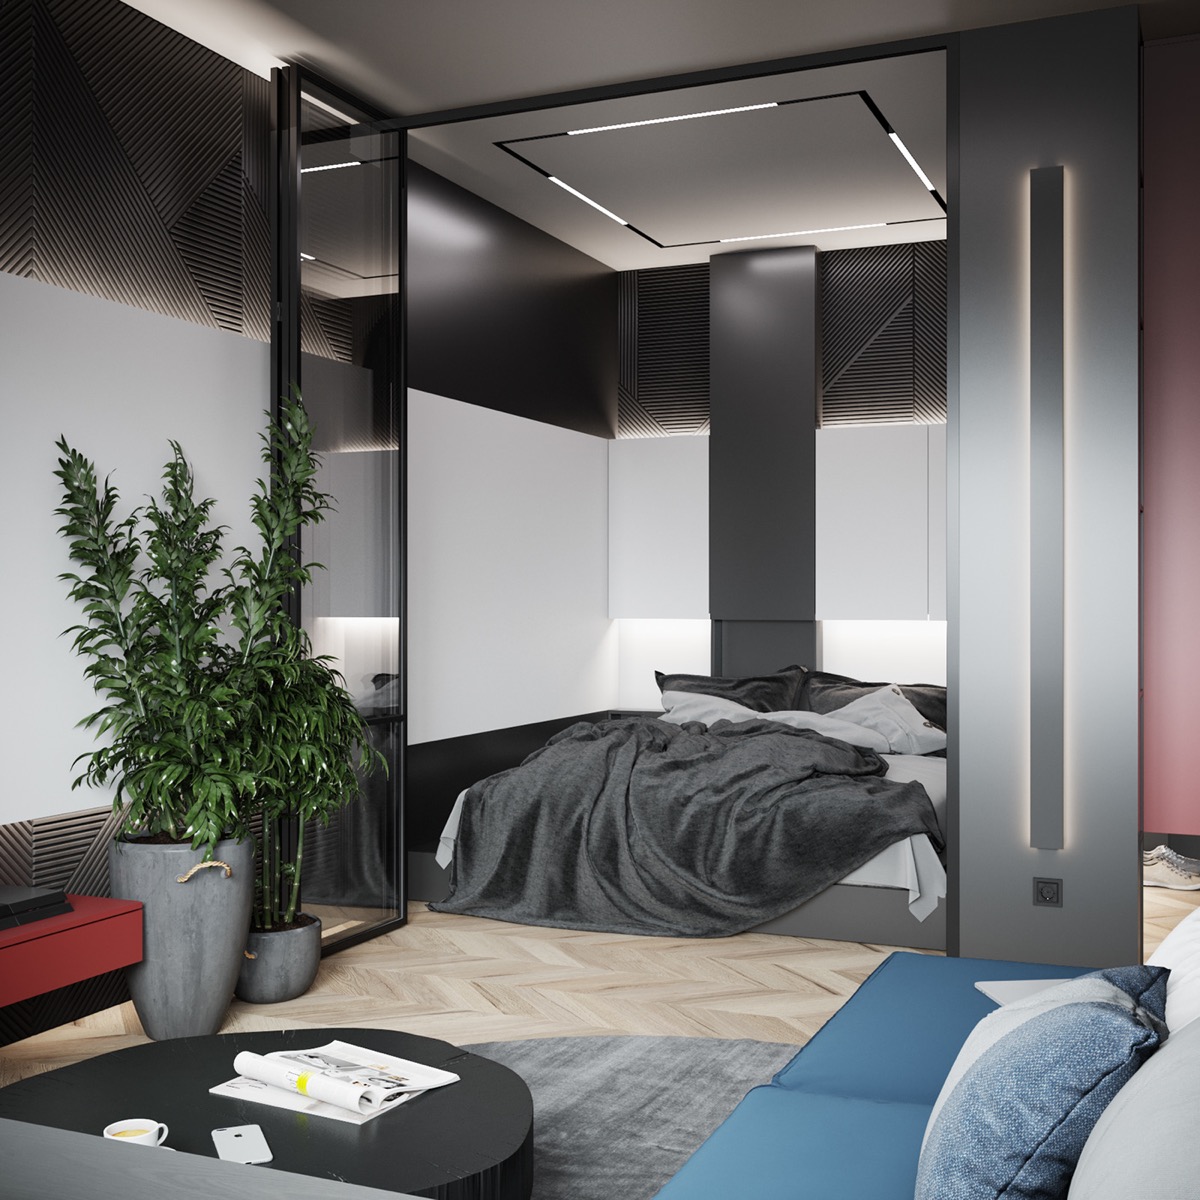 Hình ảnh toàn cảnh phòng ngủ với ga gối màu xám, đen, đèn LED trang trí tạo thành hình vuông trên trần nhà.